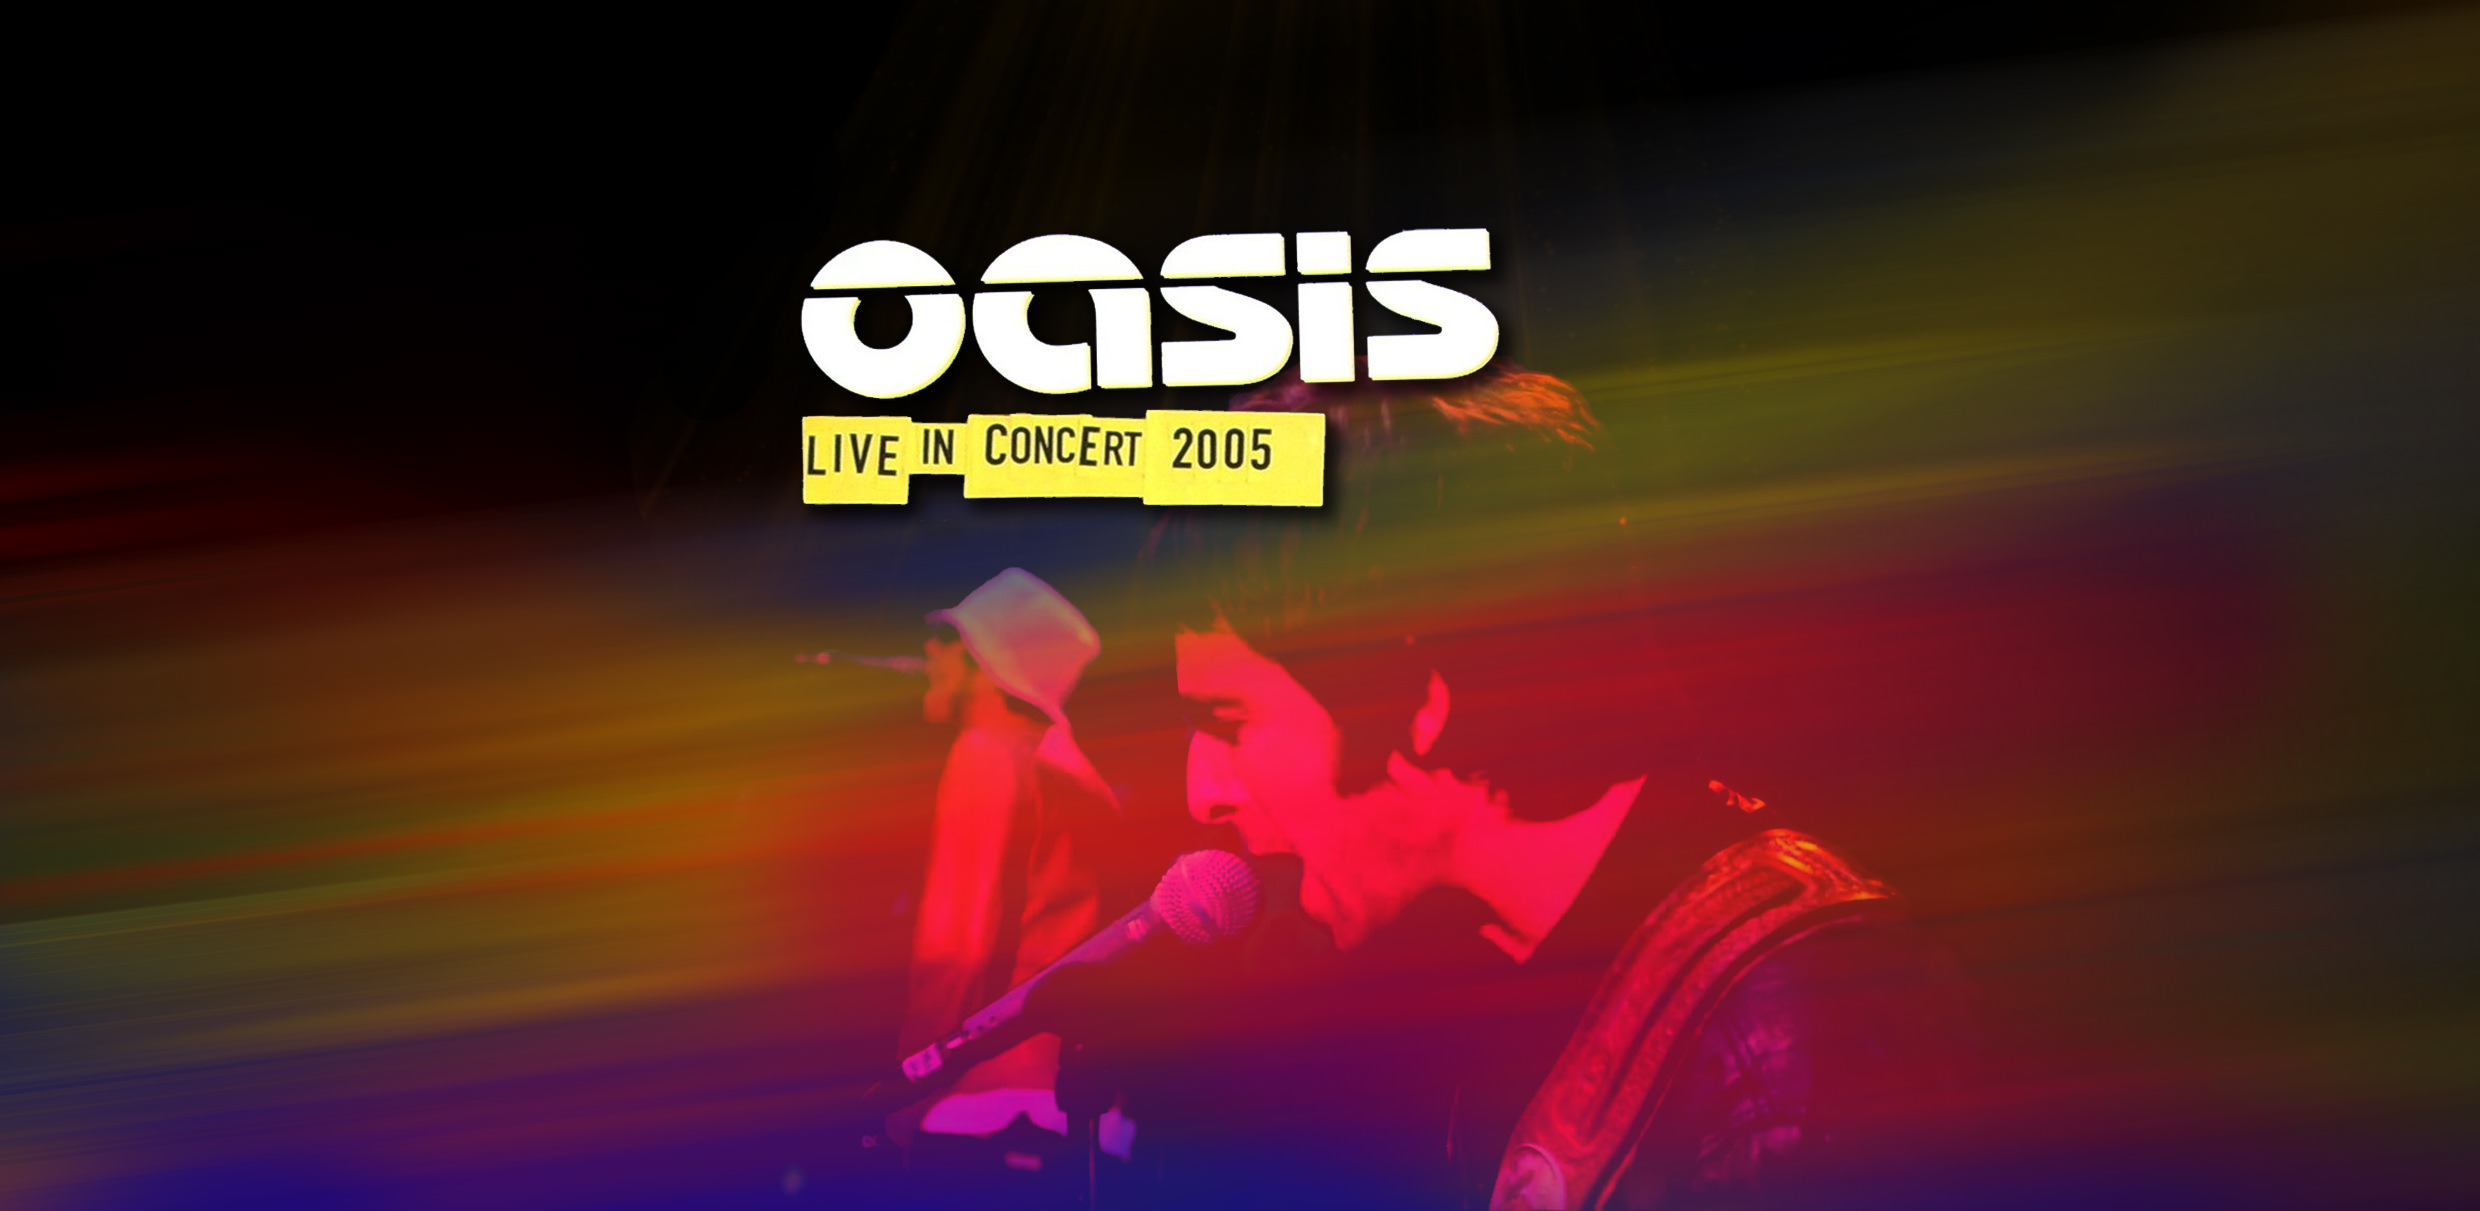 oasis 2005 tour dates